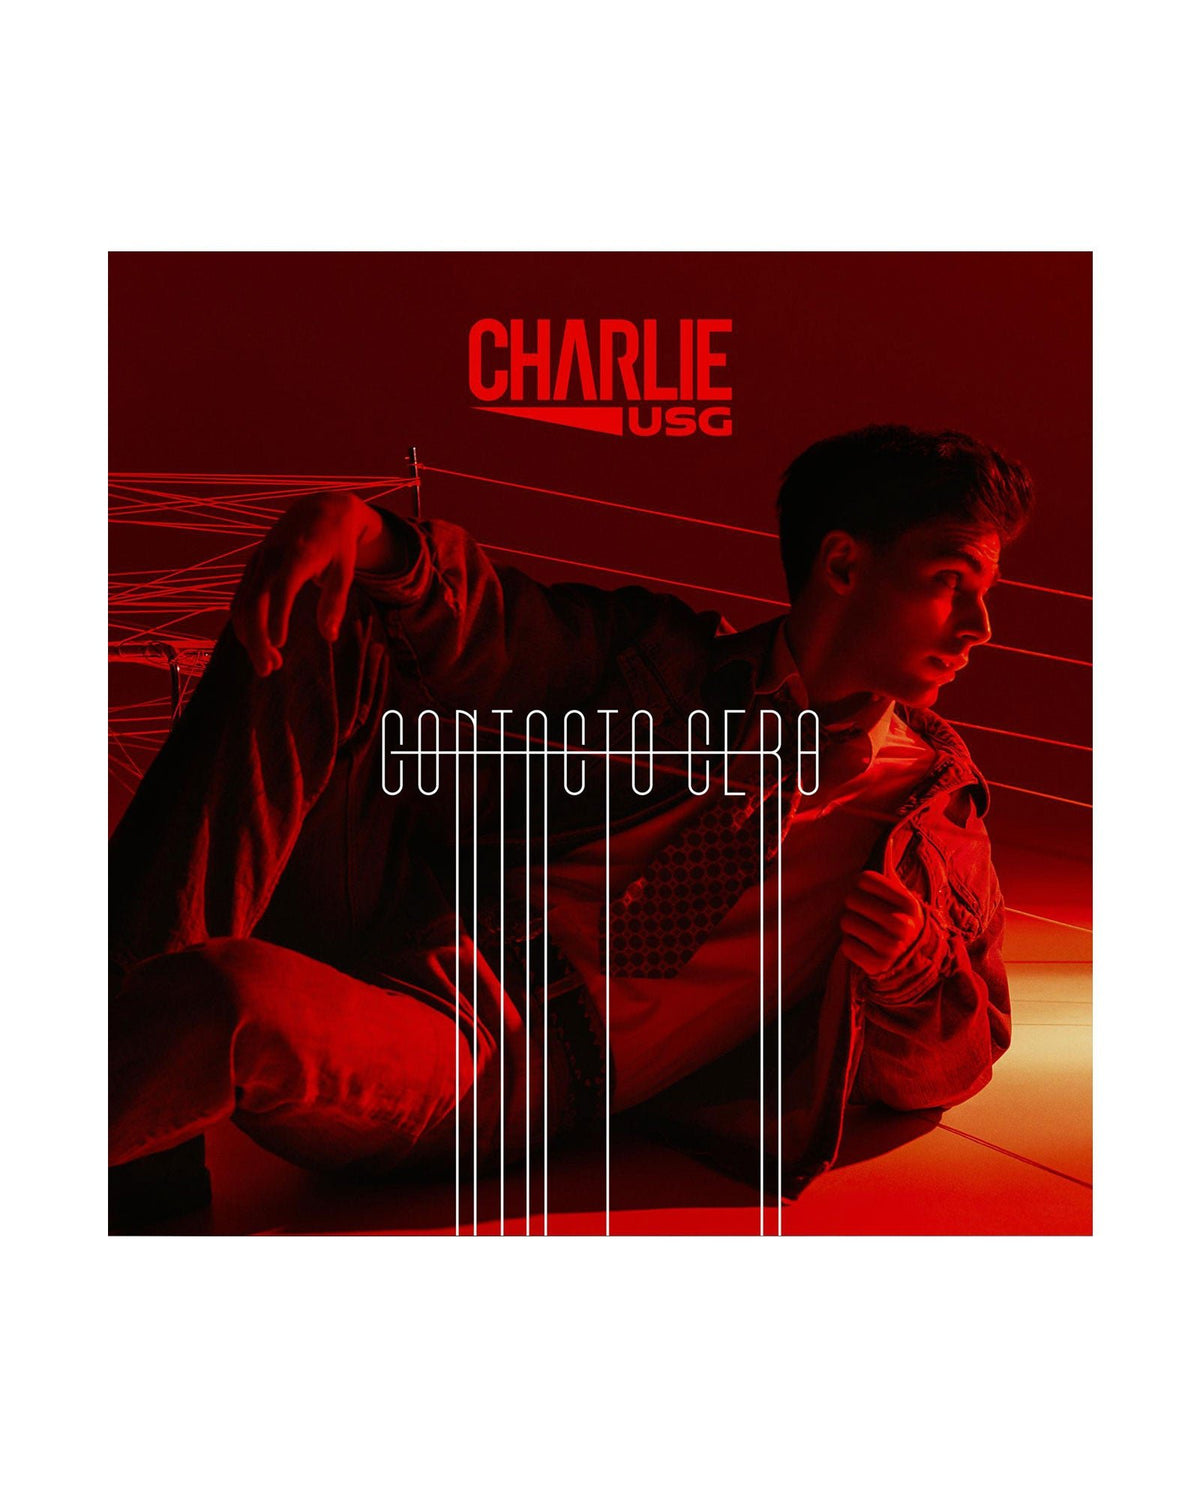 Charlie USG - CD "Contacto Cero" - D2fy · Rocktud - D2fy